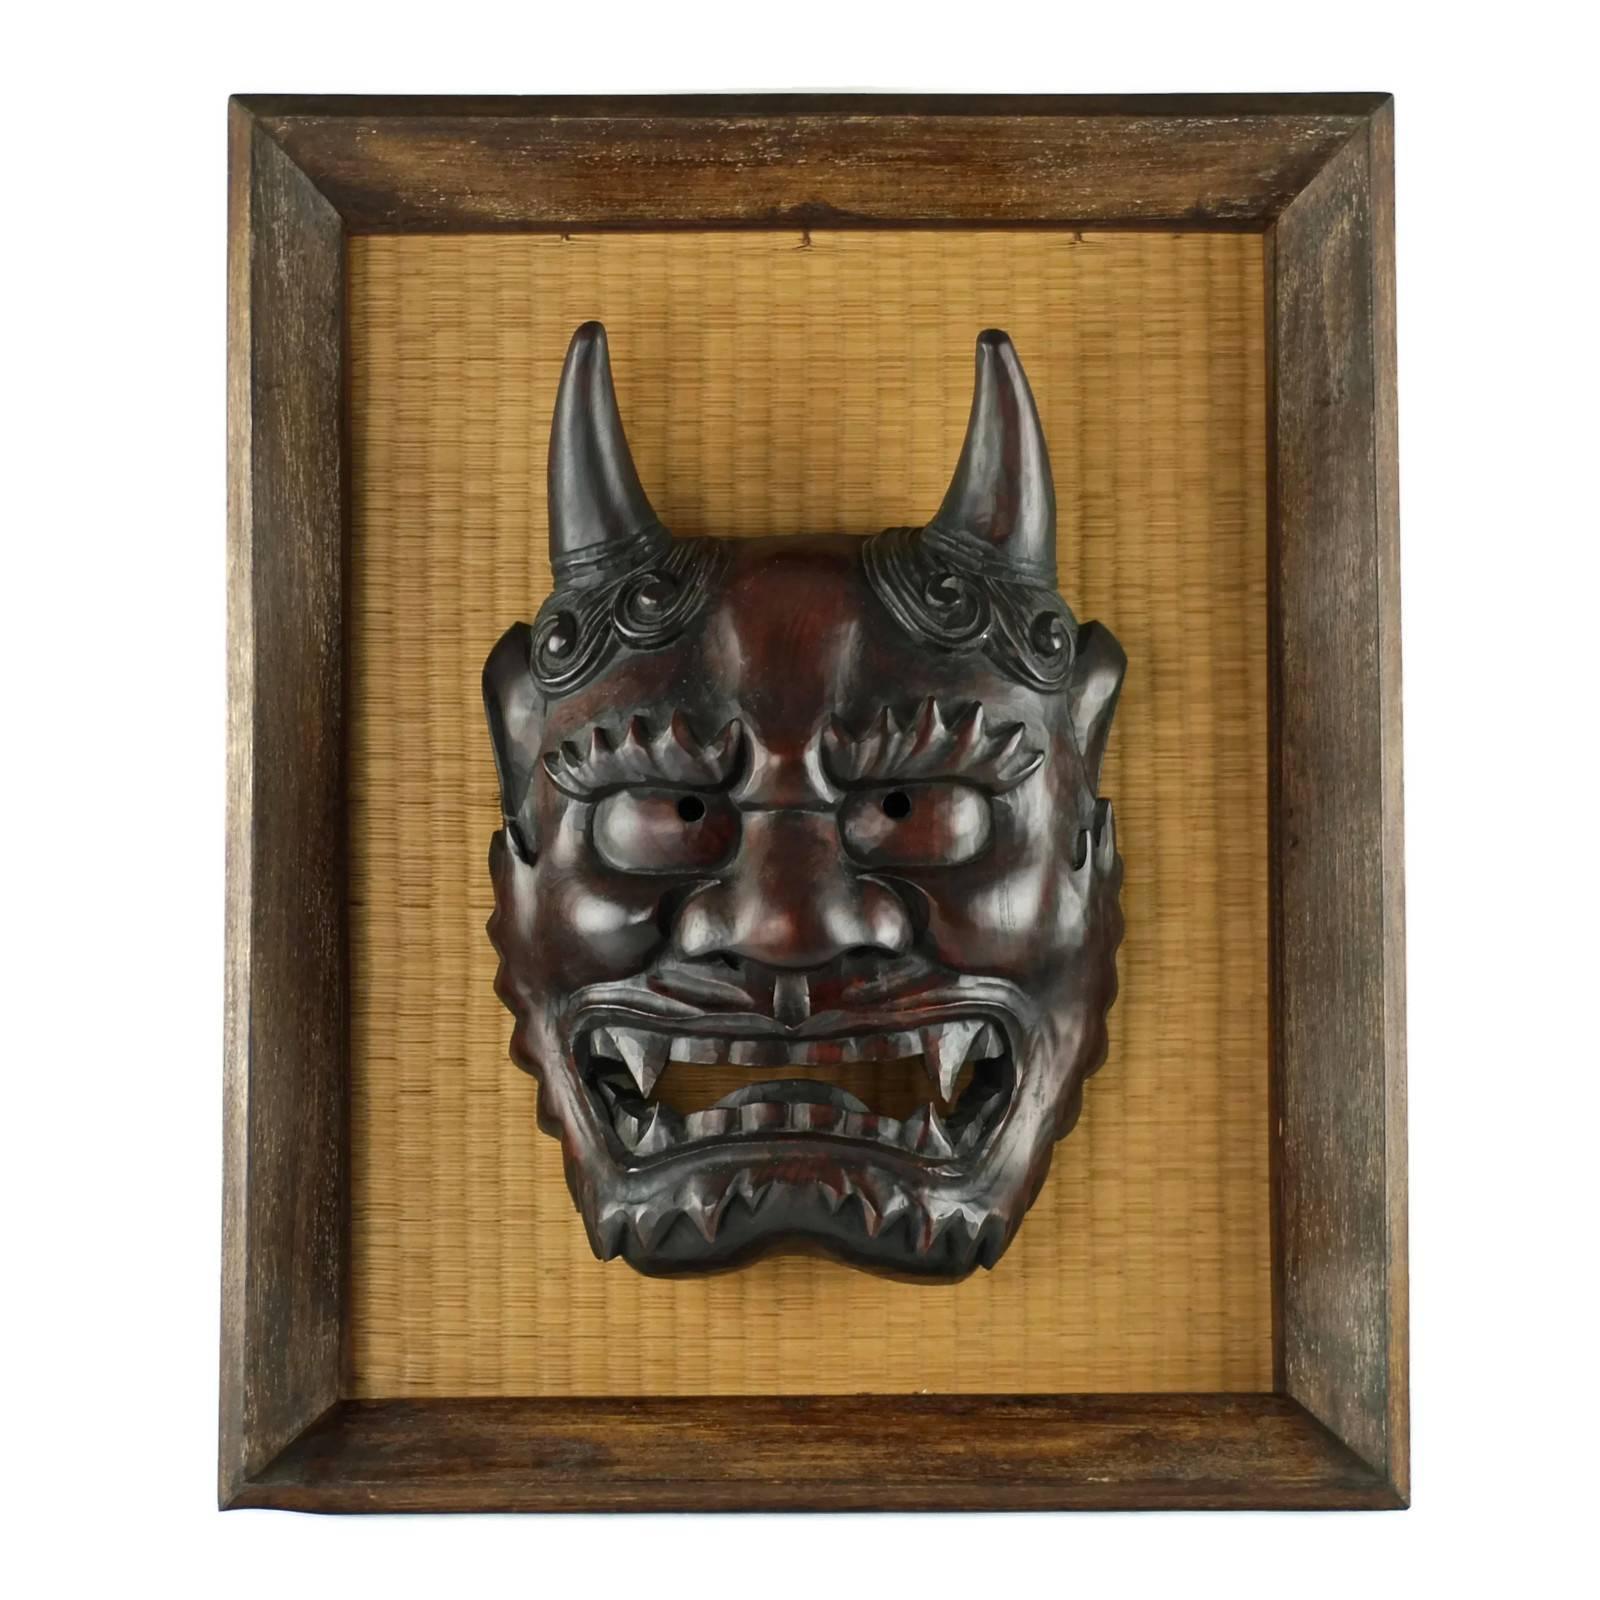 Framed Japanese Carved Wood Noh Hannya Mask on Grasscloth 